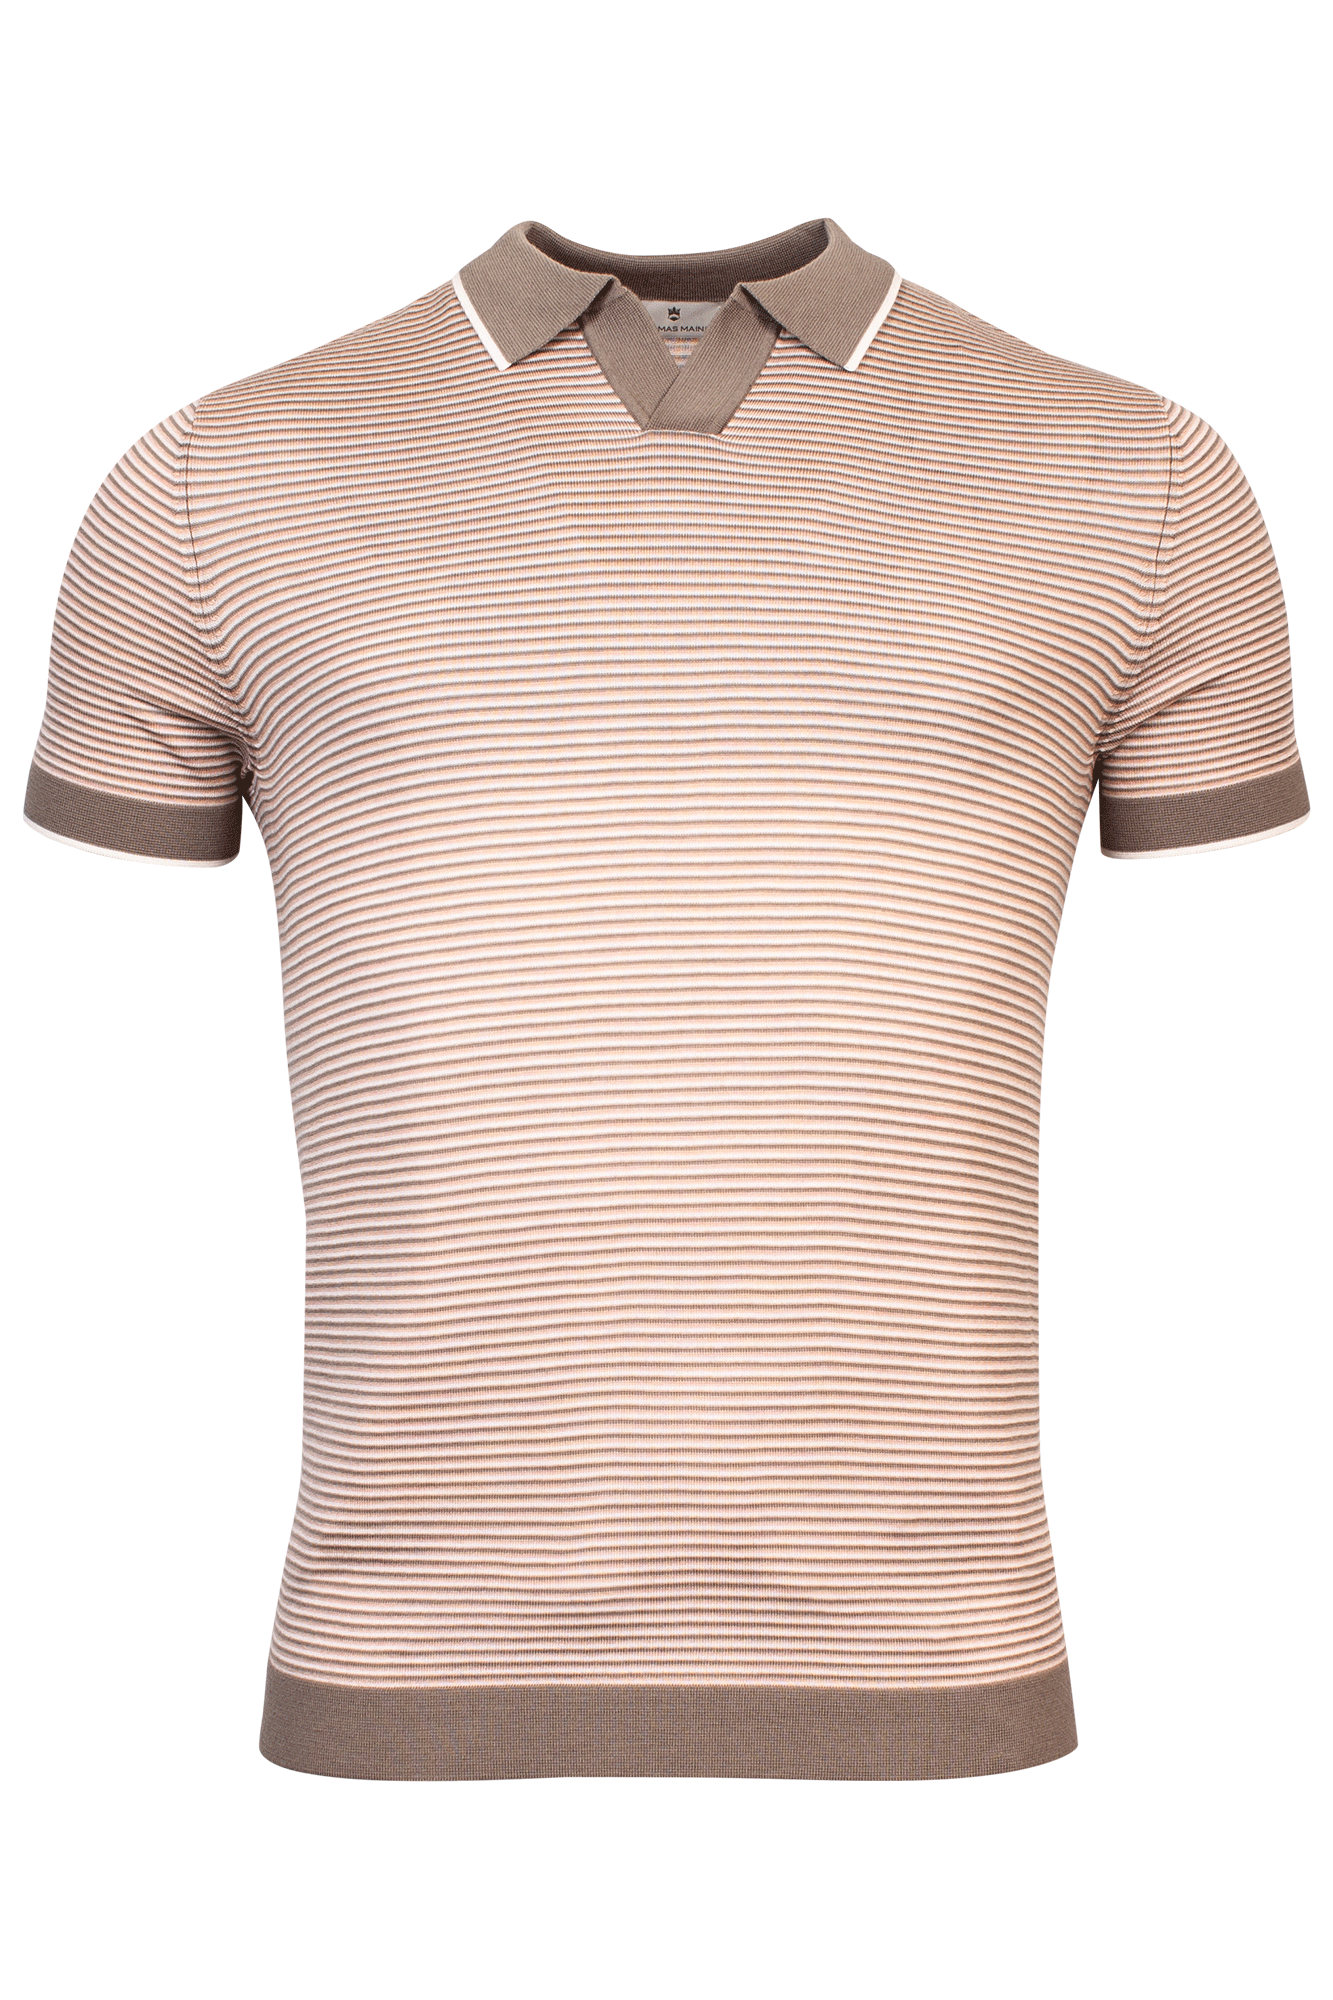 Pullover V-Neck Polo collar - Shirt Sleeves